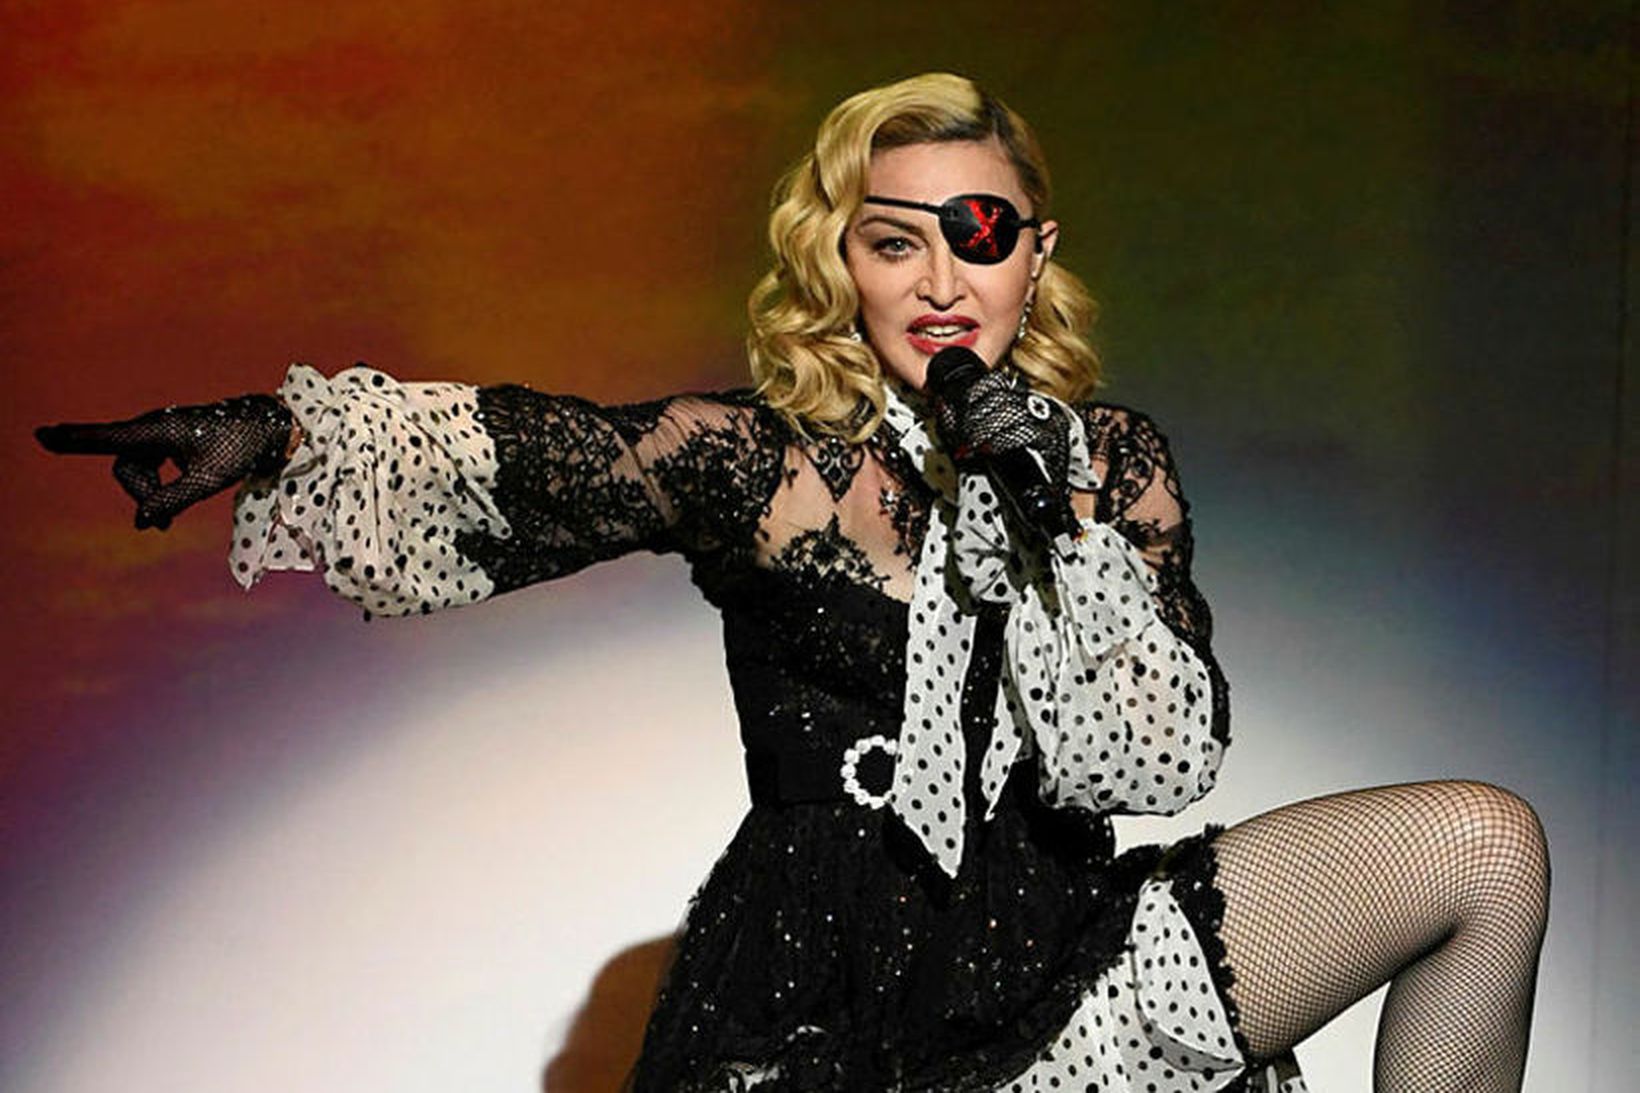 Madonna kemur fram á úrslitakvöldi Eurovision eftir allt saman.